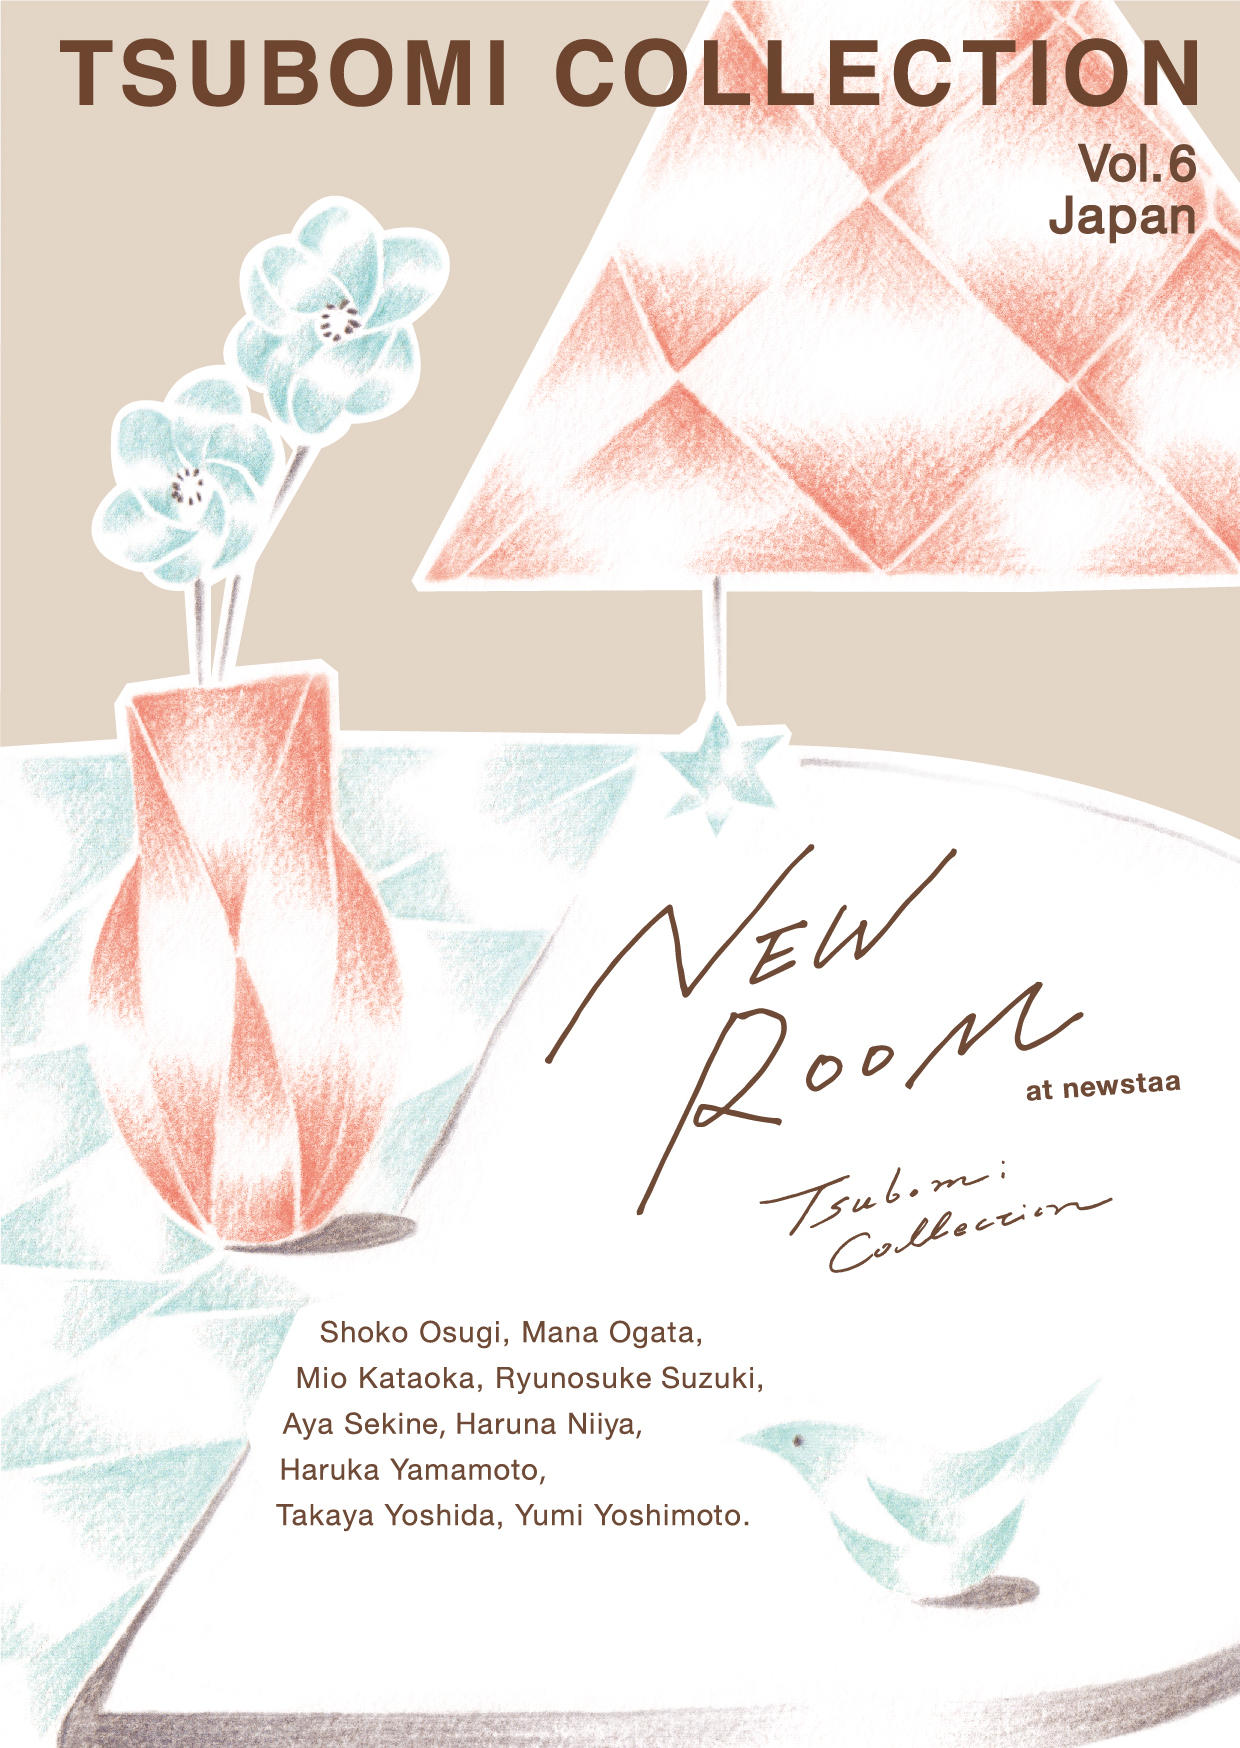 在学生や若手の卒業生が新生活の在宅時間を彩る作品を展示販売するプロジェクト「Tsubomi Collection Vol.6 Japan」NEW ROOM 巡回展を開催します！